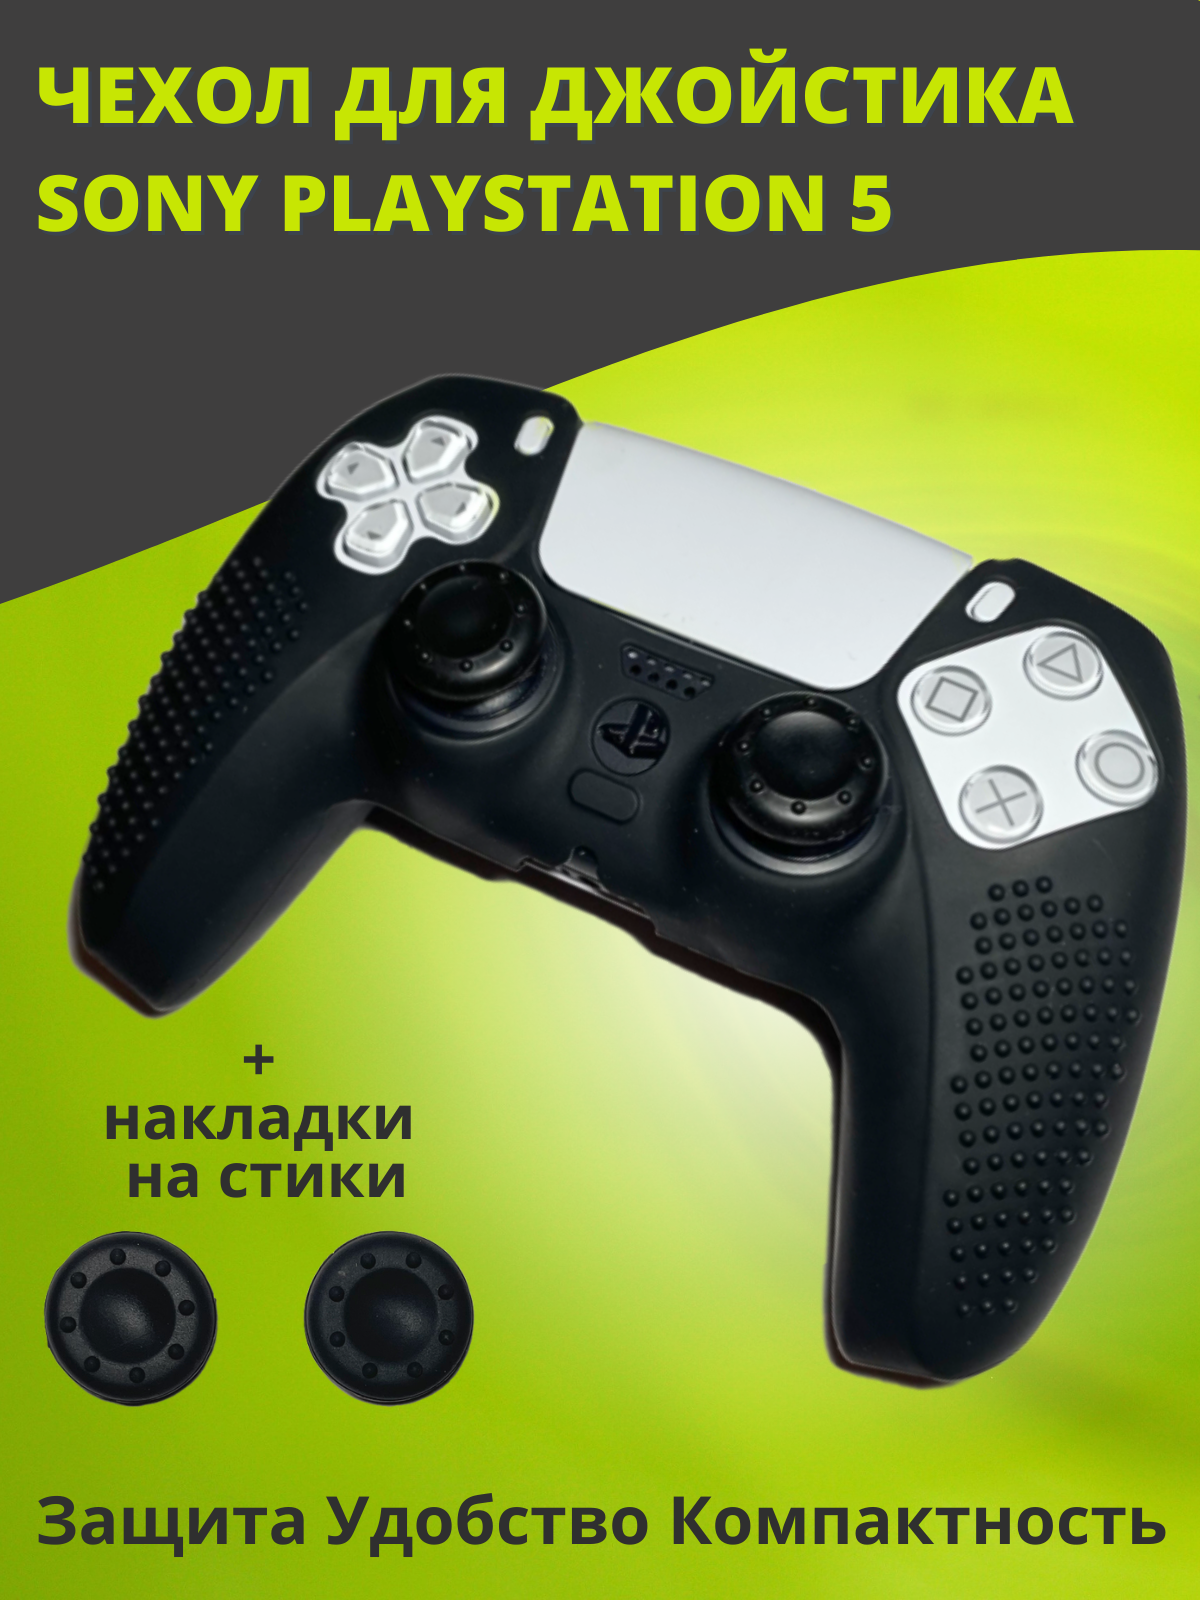 Защитный чехол для джойстика геймпада Sony Playstation 5